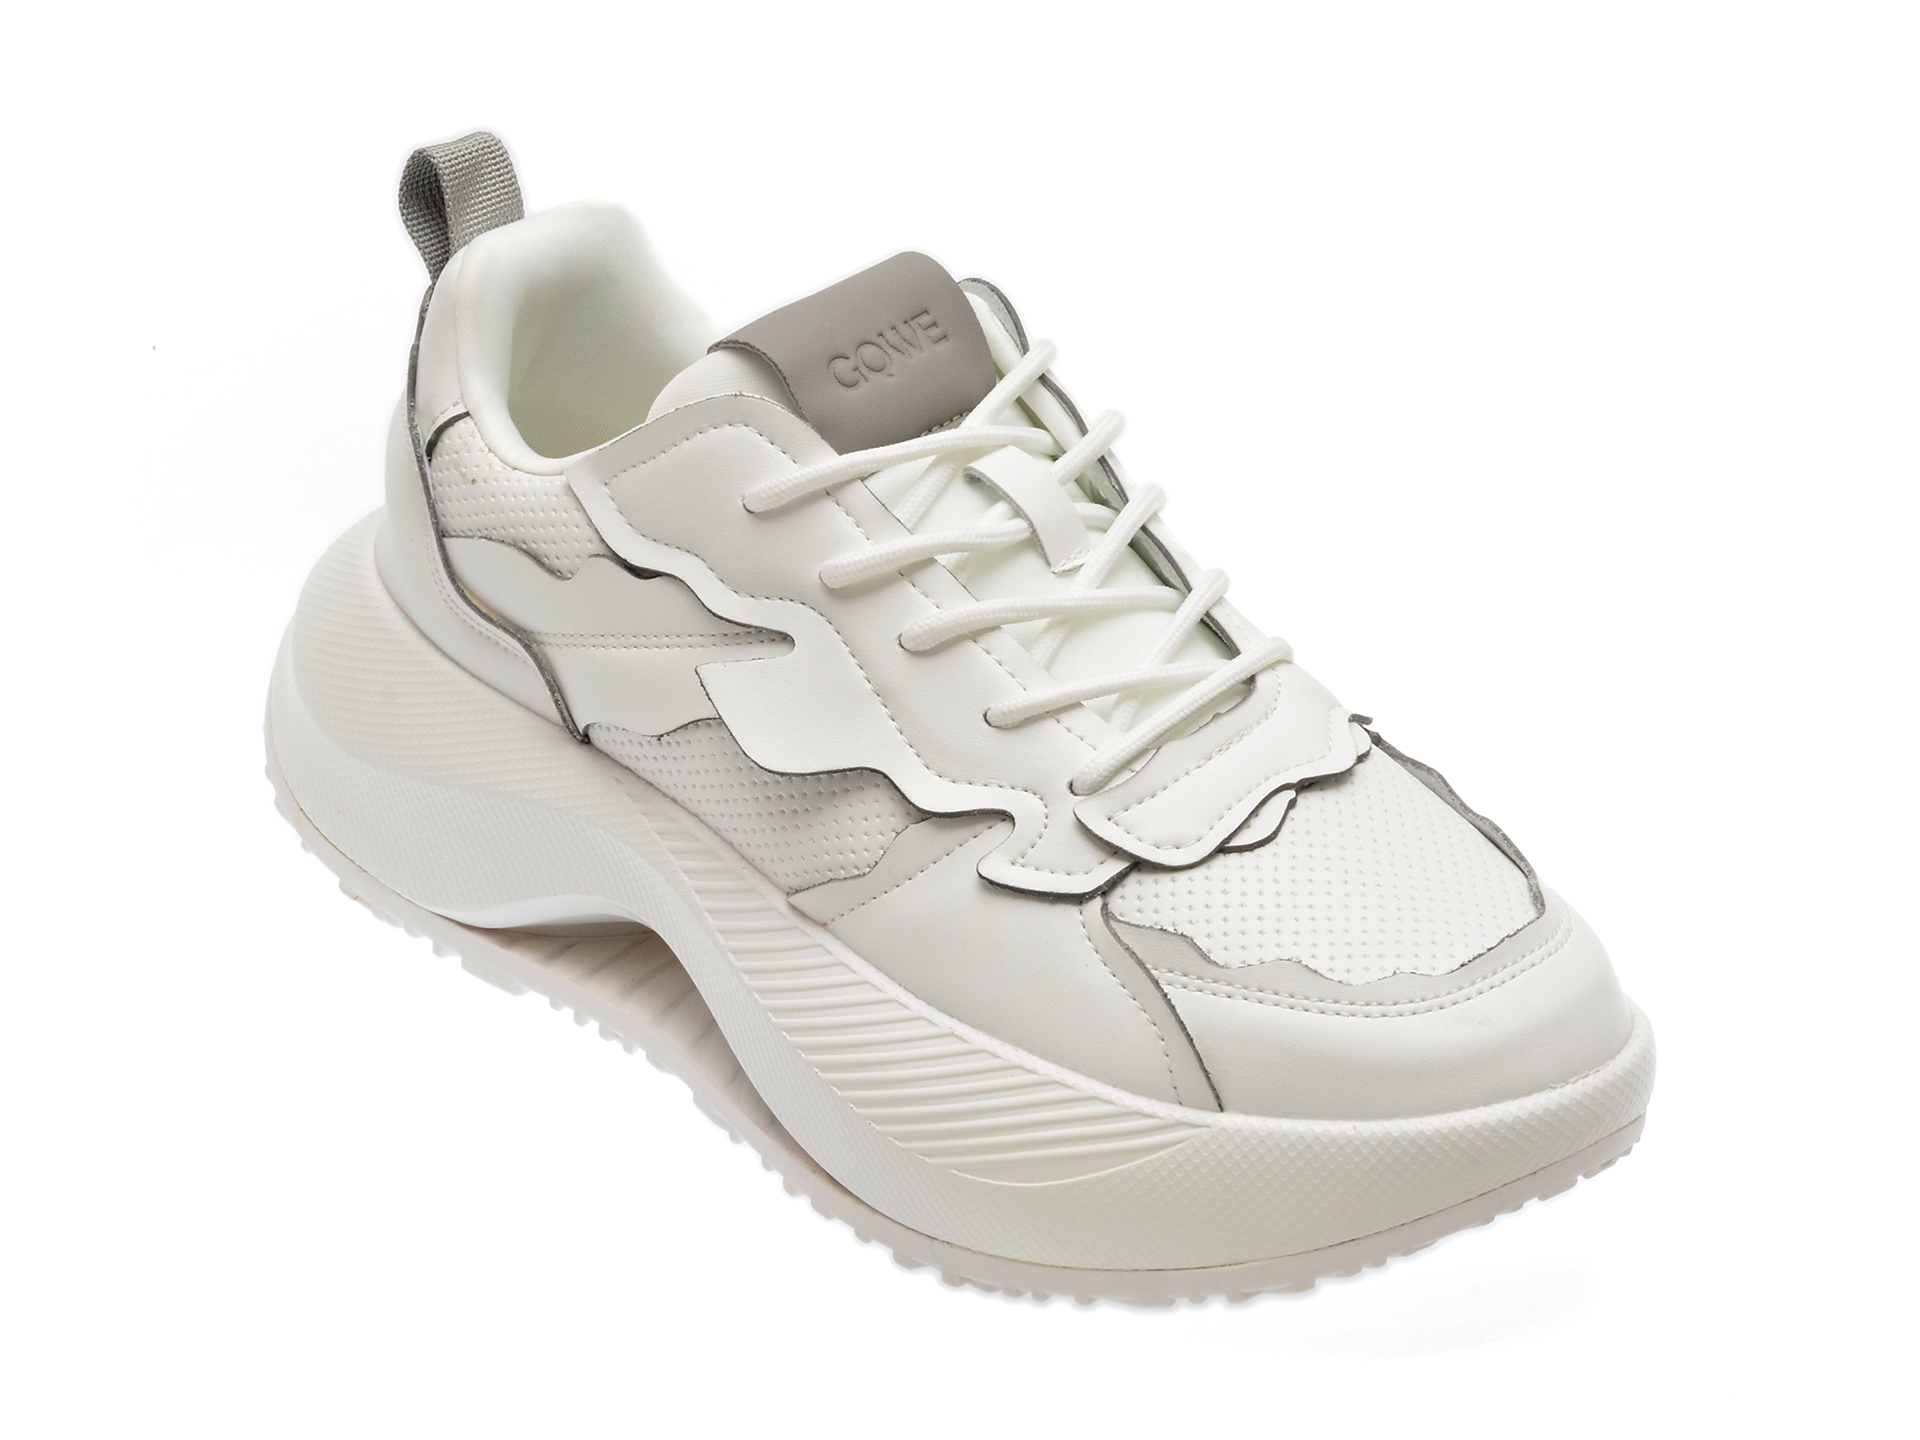 Pantofi casual GQWE albi, 23810, din piele ecologica